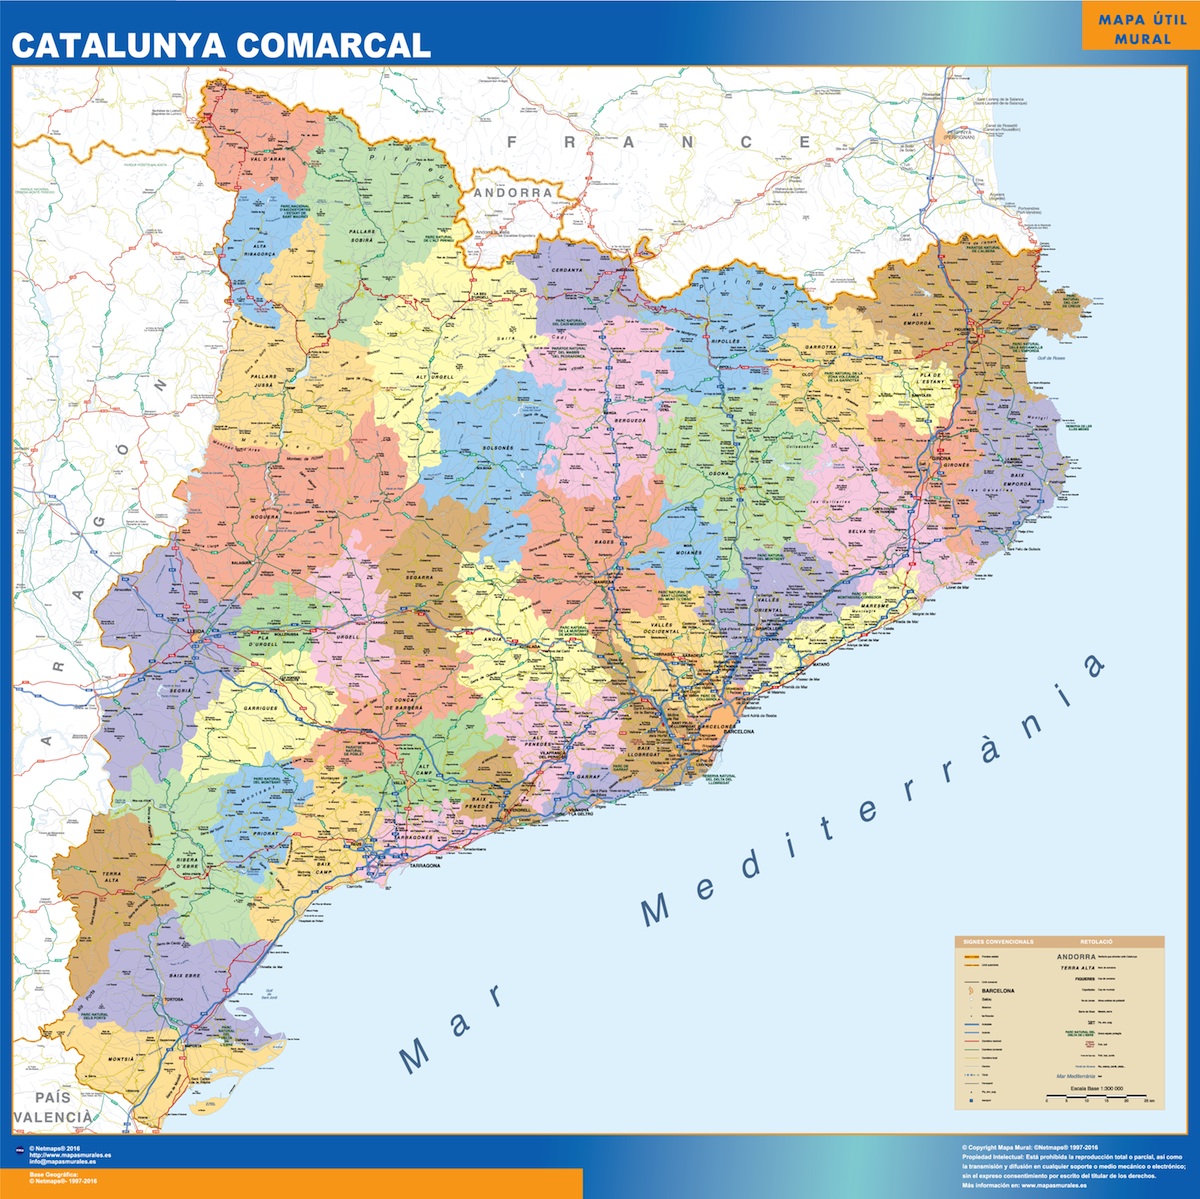 Mapa Catalunya Comarcal